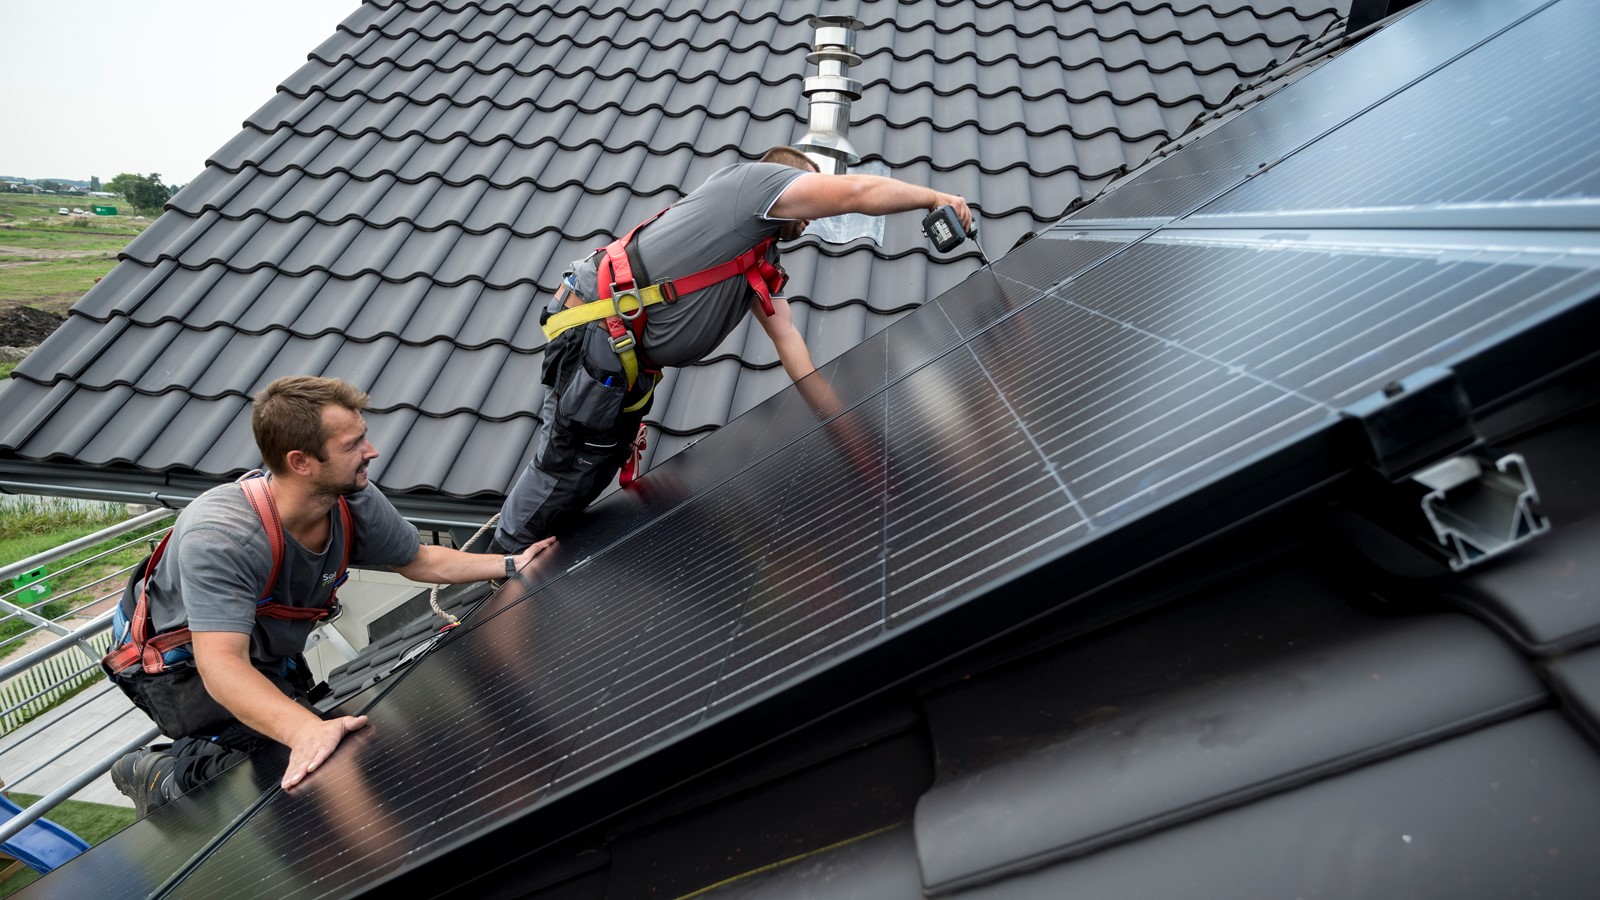 Installateurs monteren zonnepanelen op een dak